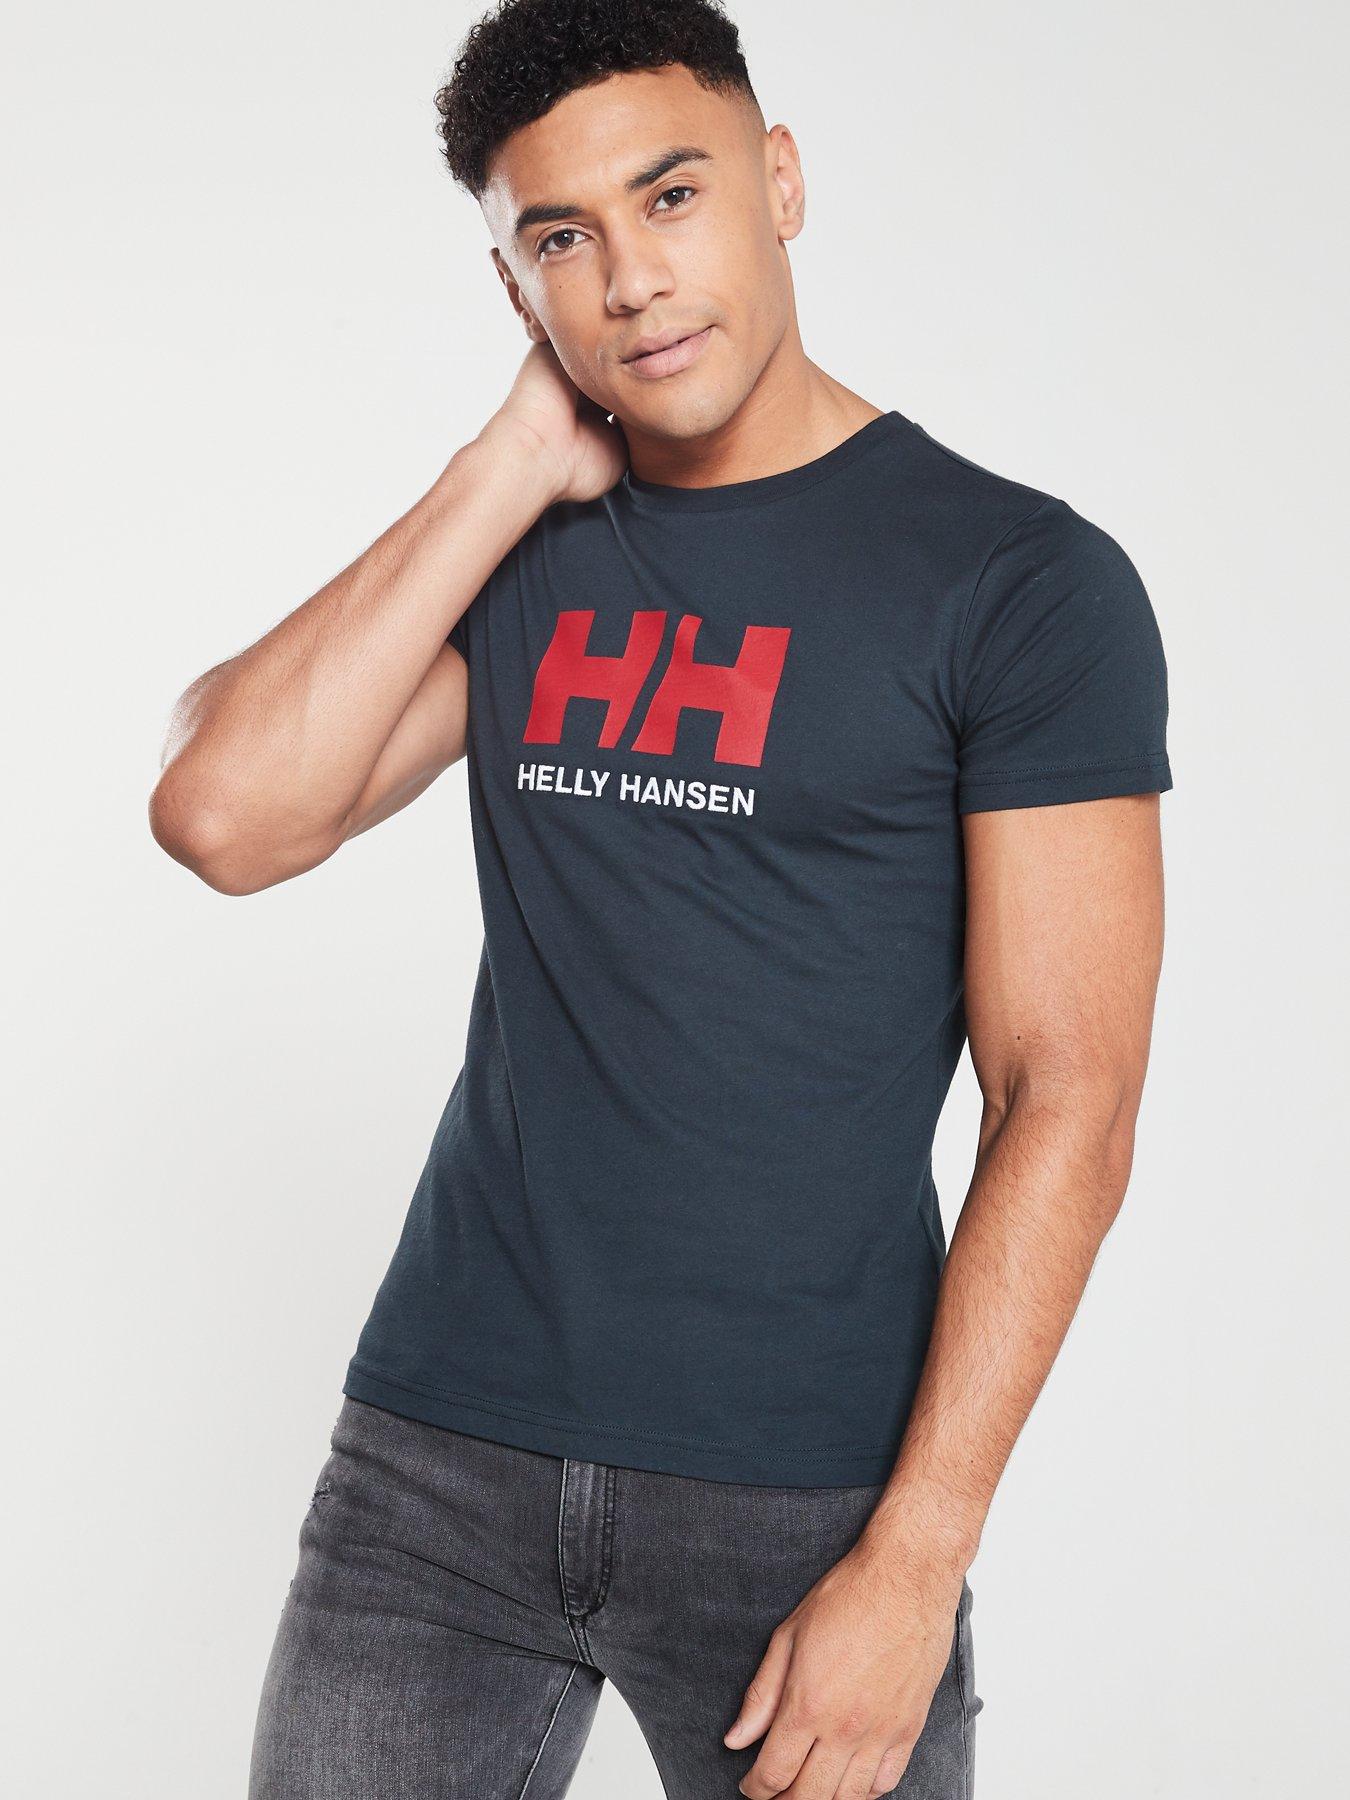 hansen t shirt,www.starfab-group.com